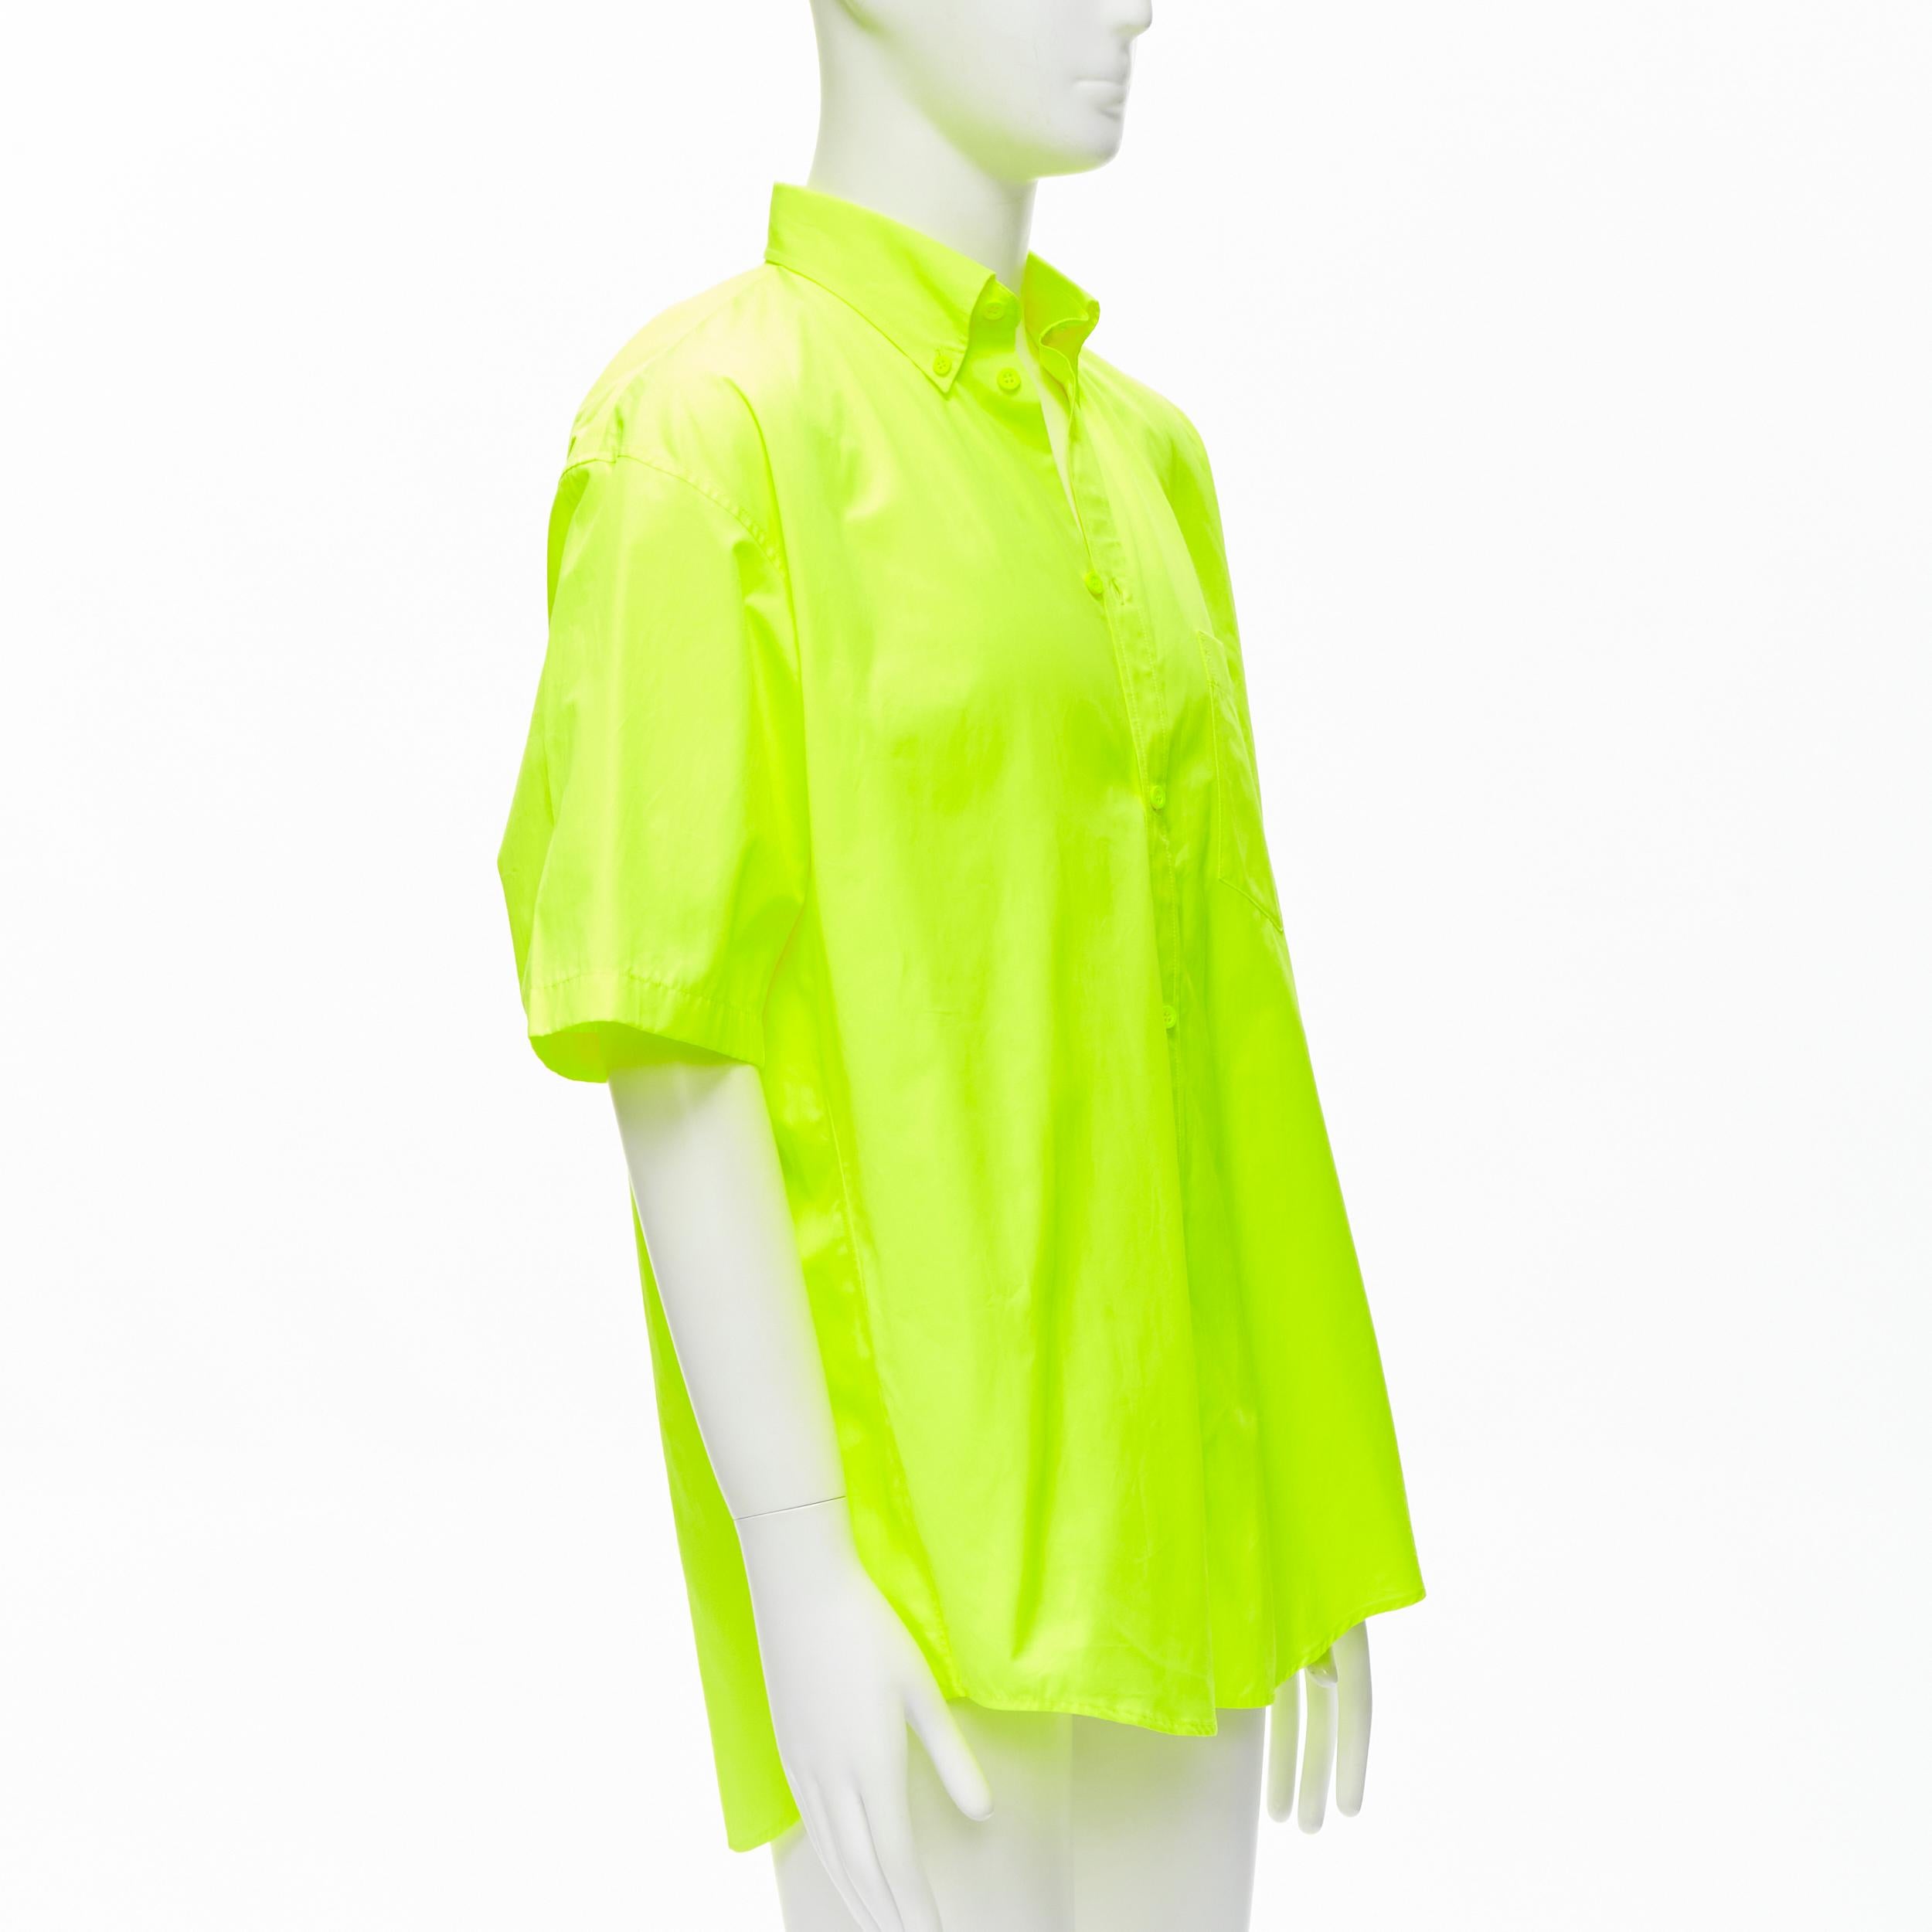 Jaune BALENCIAGA chemise surdimensionnée jaune fluo à épaules dénudées neuve EU38 S, 2020 en vente